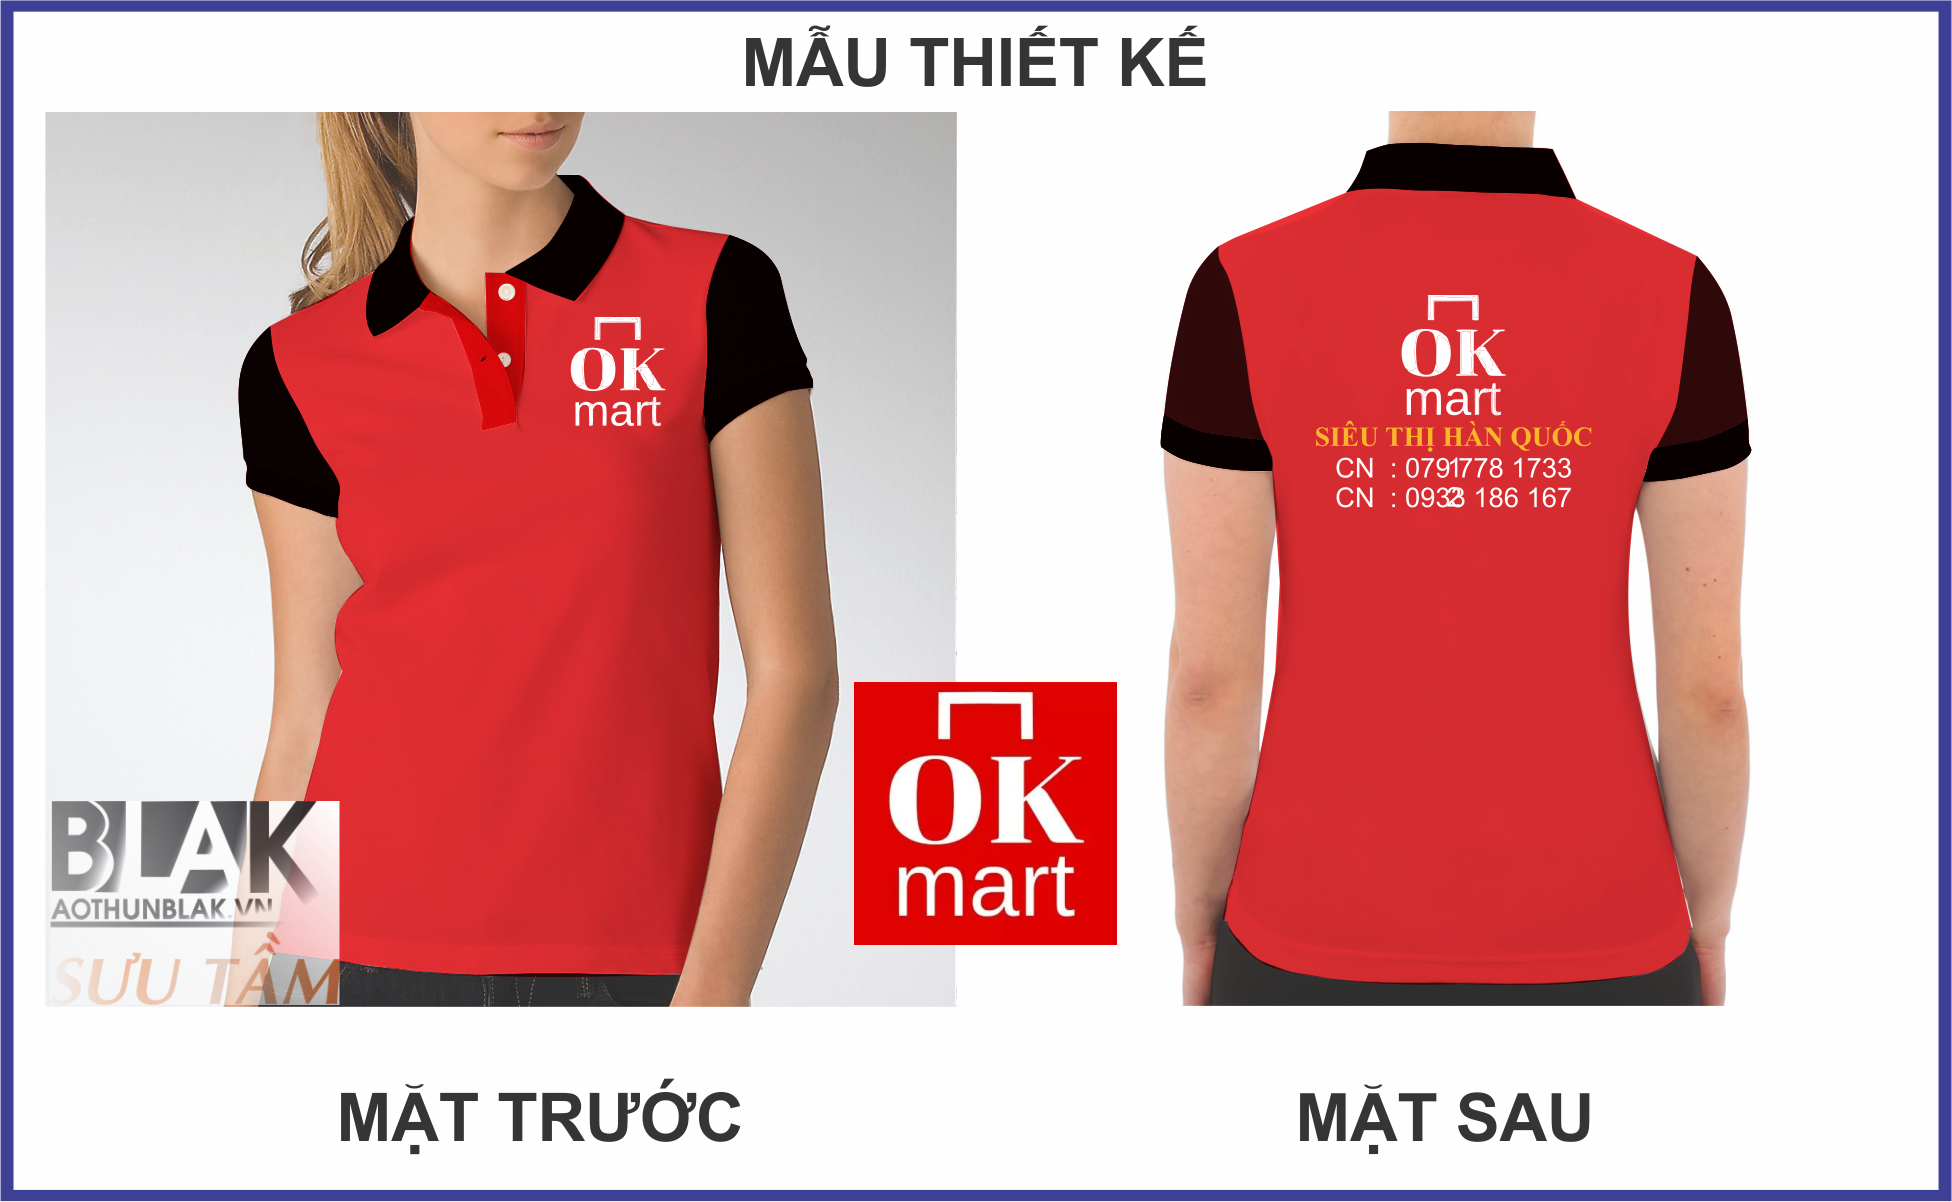 Mẫu thiết kế áo đồng phục OK Mart tại Vũng Tàu có gì đặc biệt?